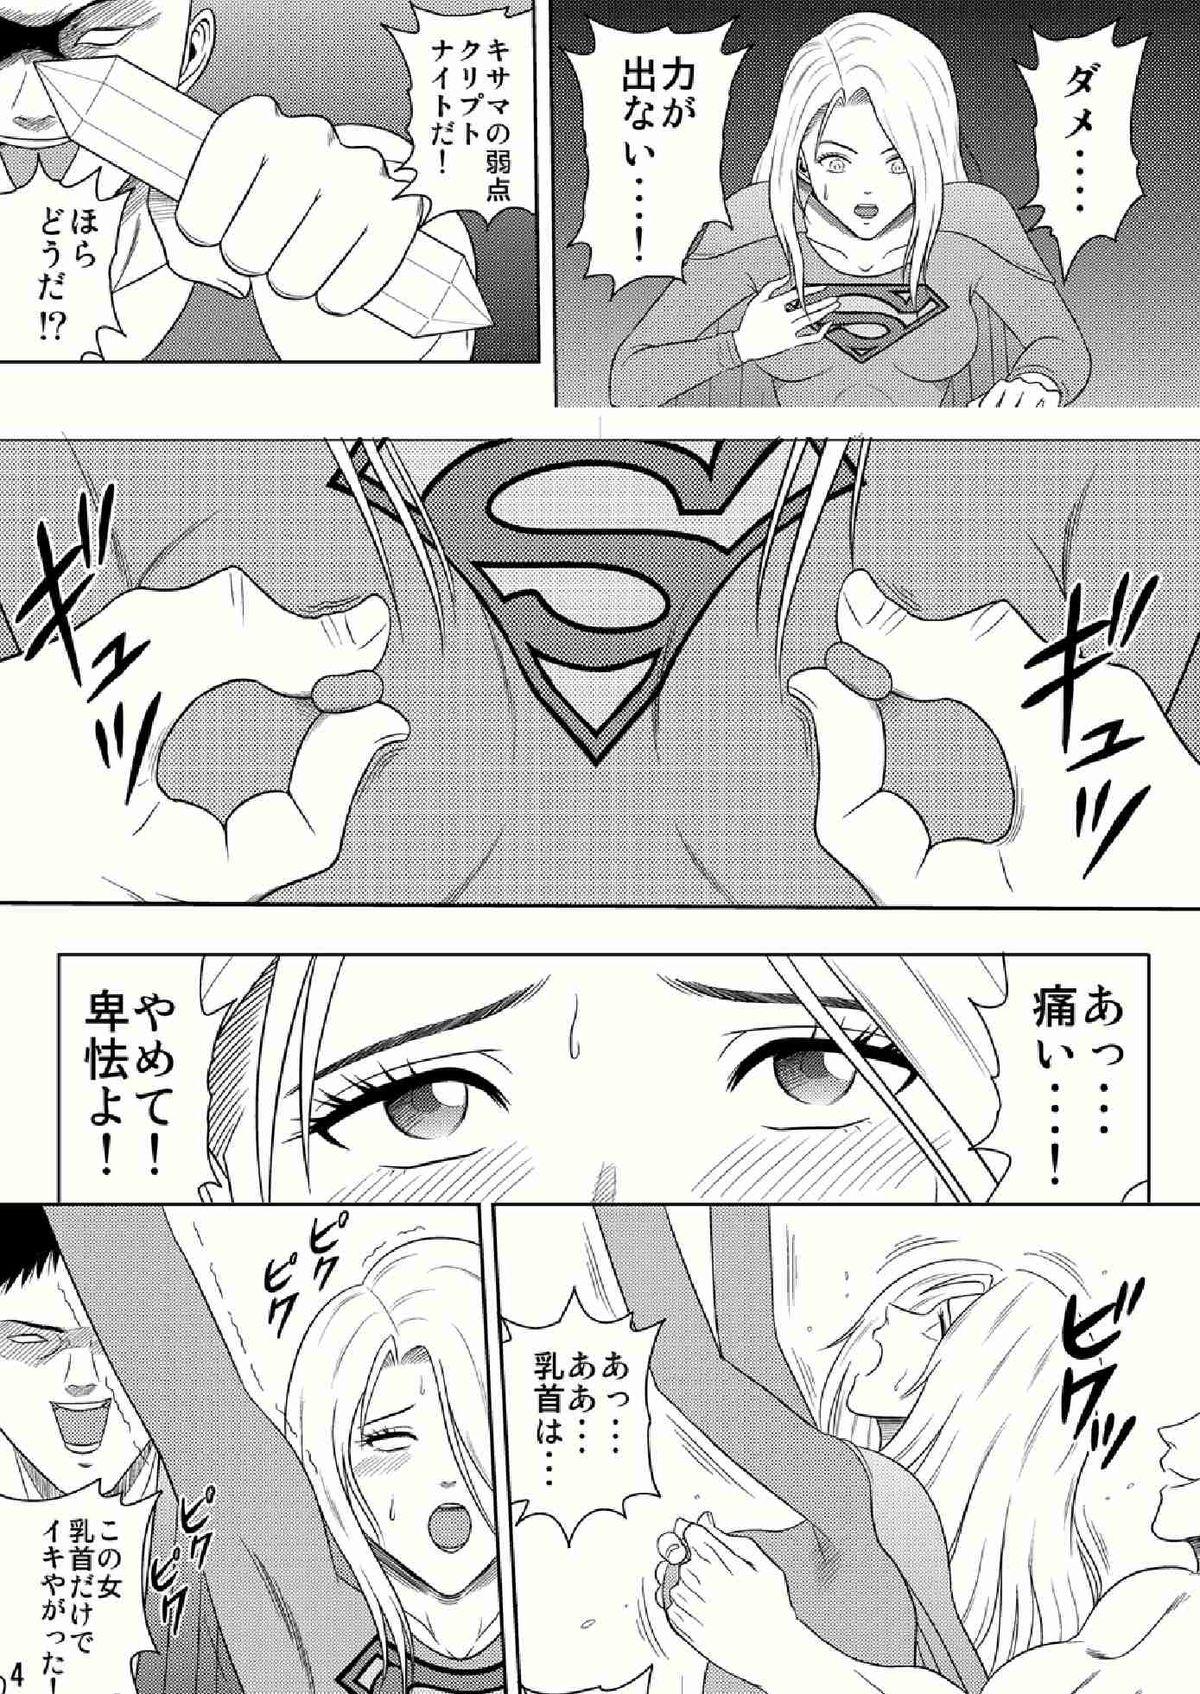 Mas Toukikoubou vol.2 SUPER GIRL Free Porn Amateur - Page 4